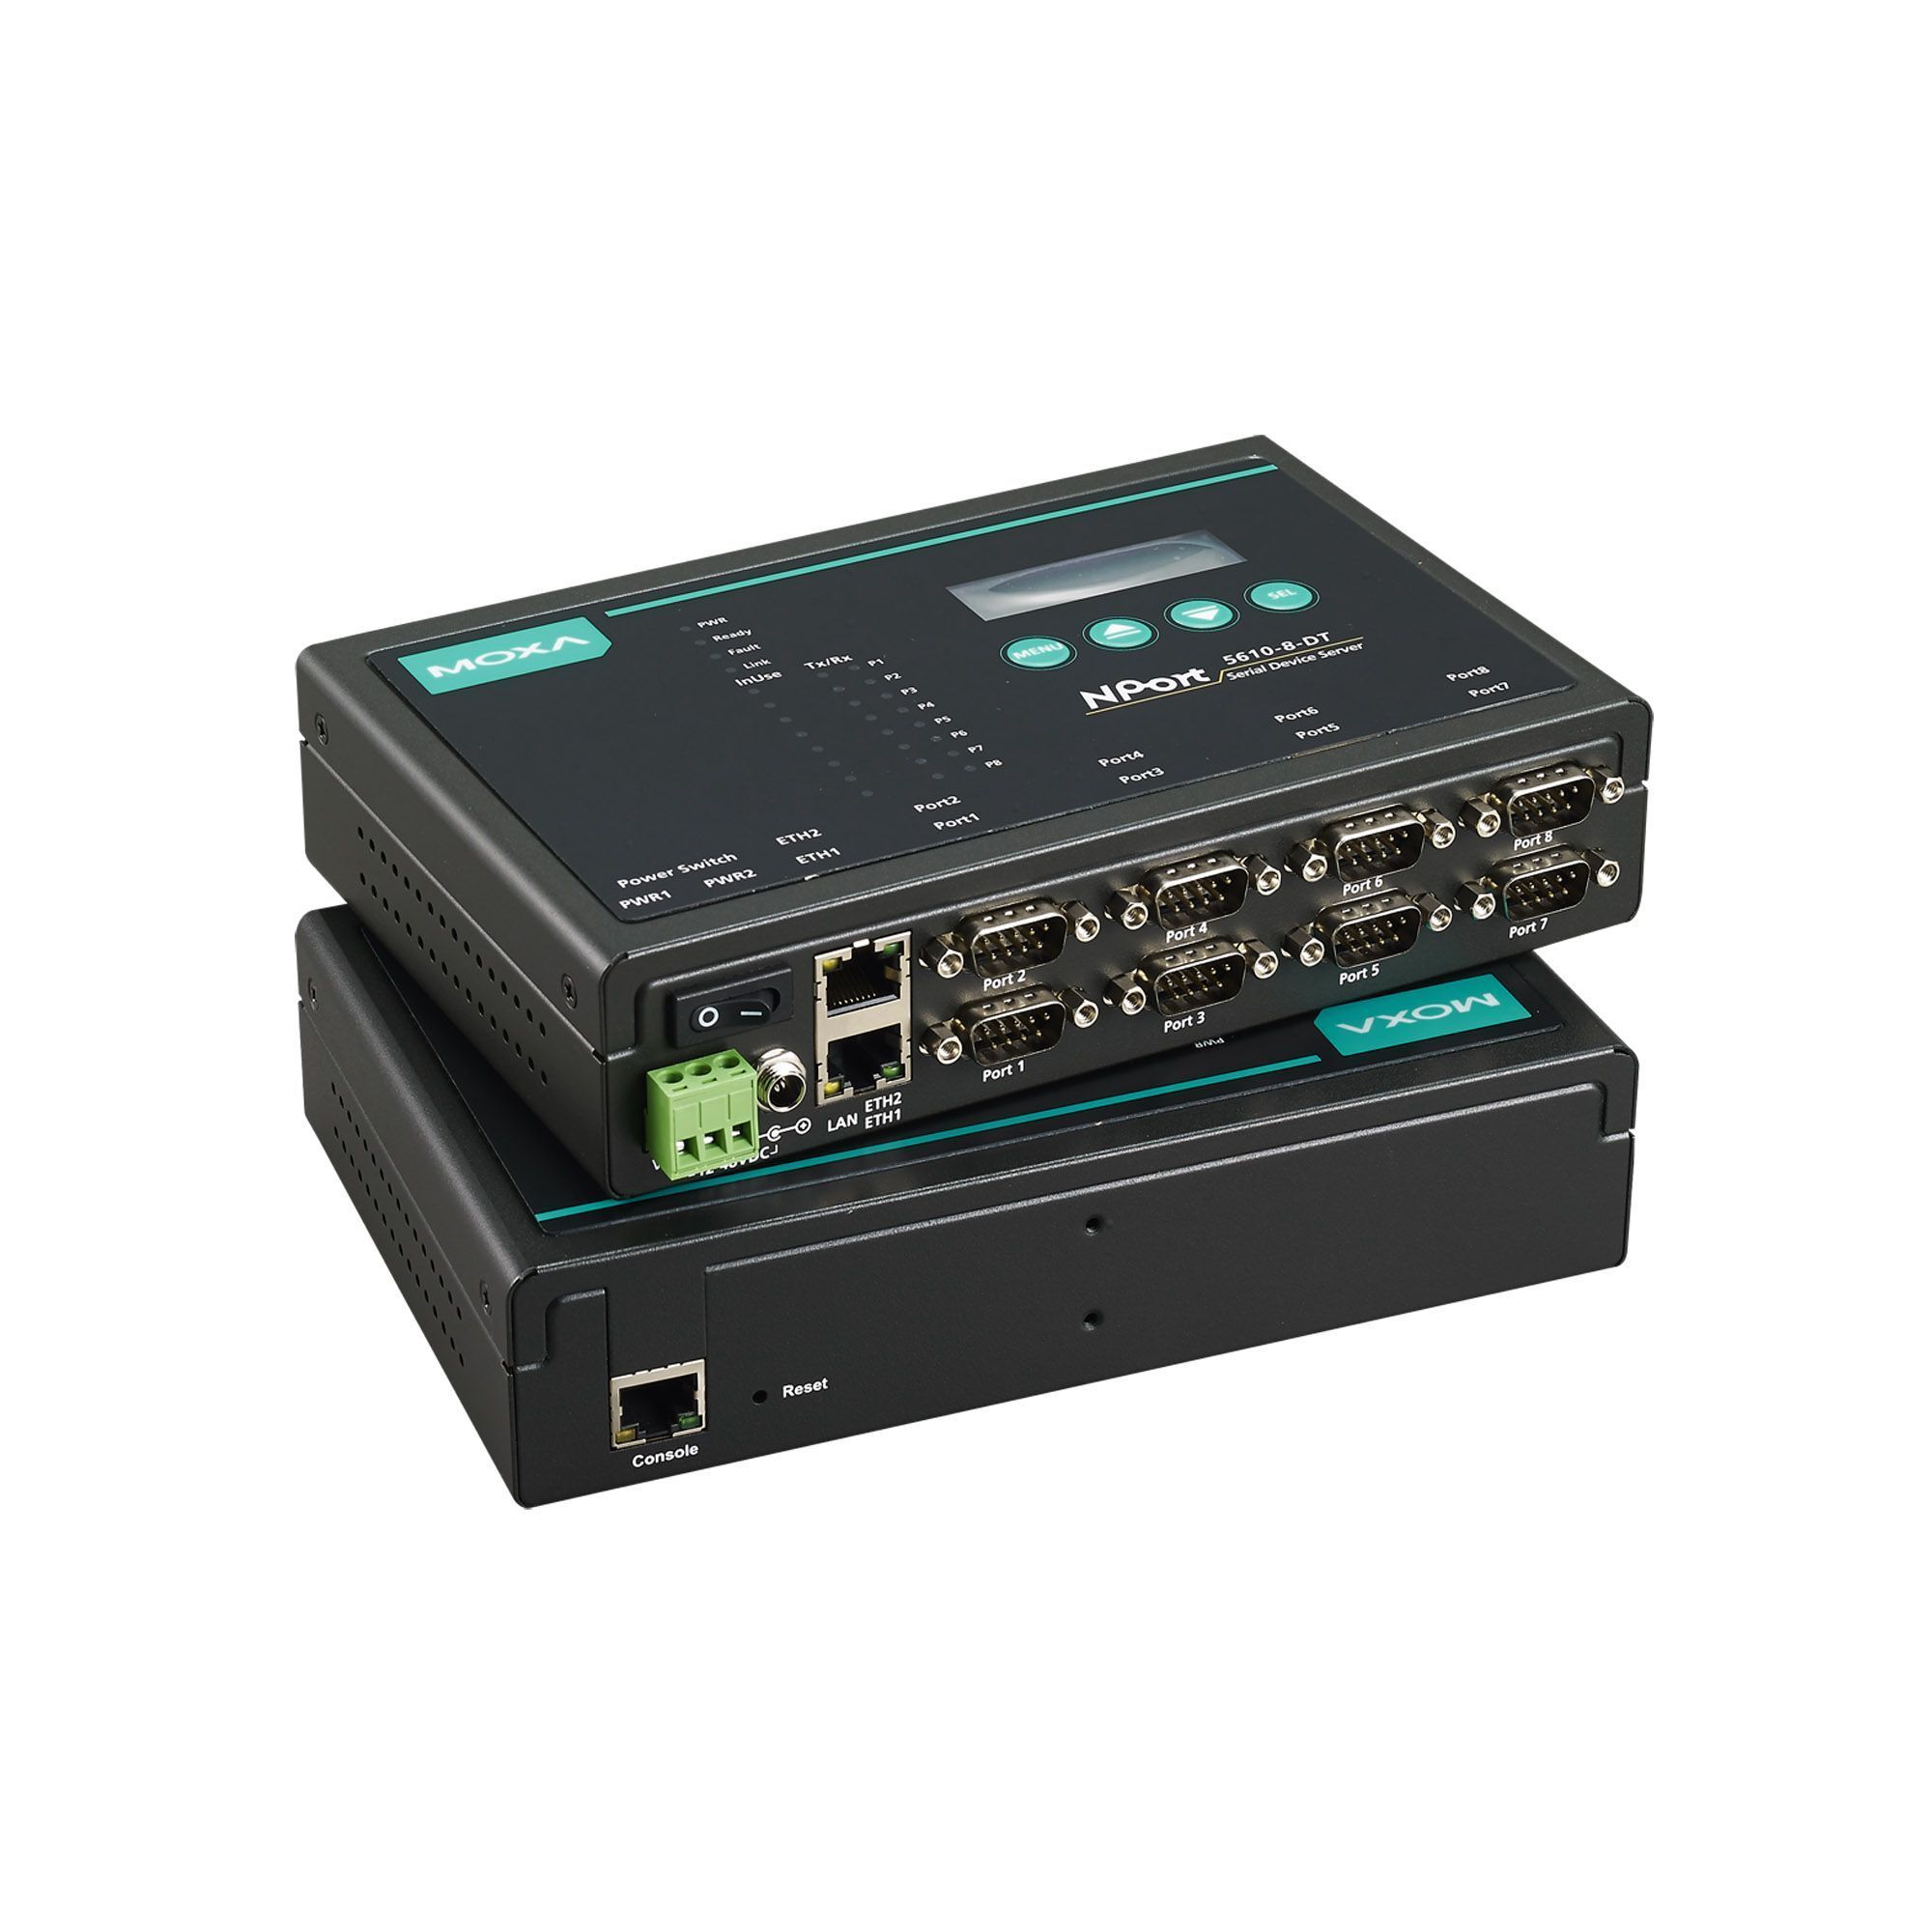 Серверное оборудование Moxa NPort 5610-8-DT